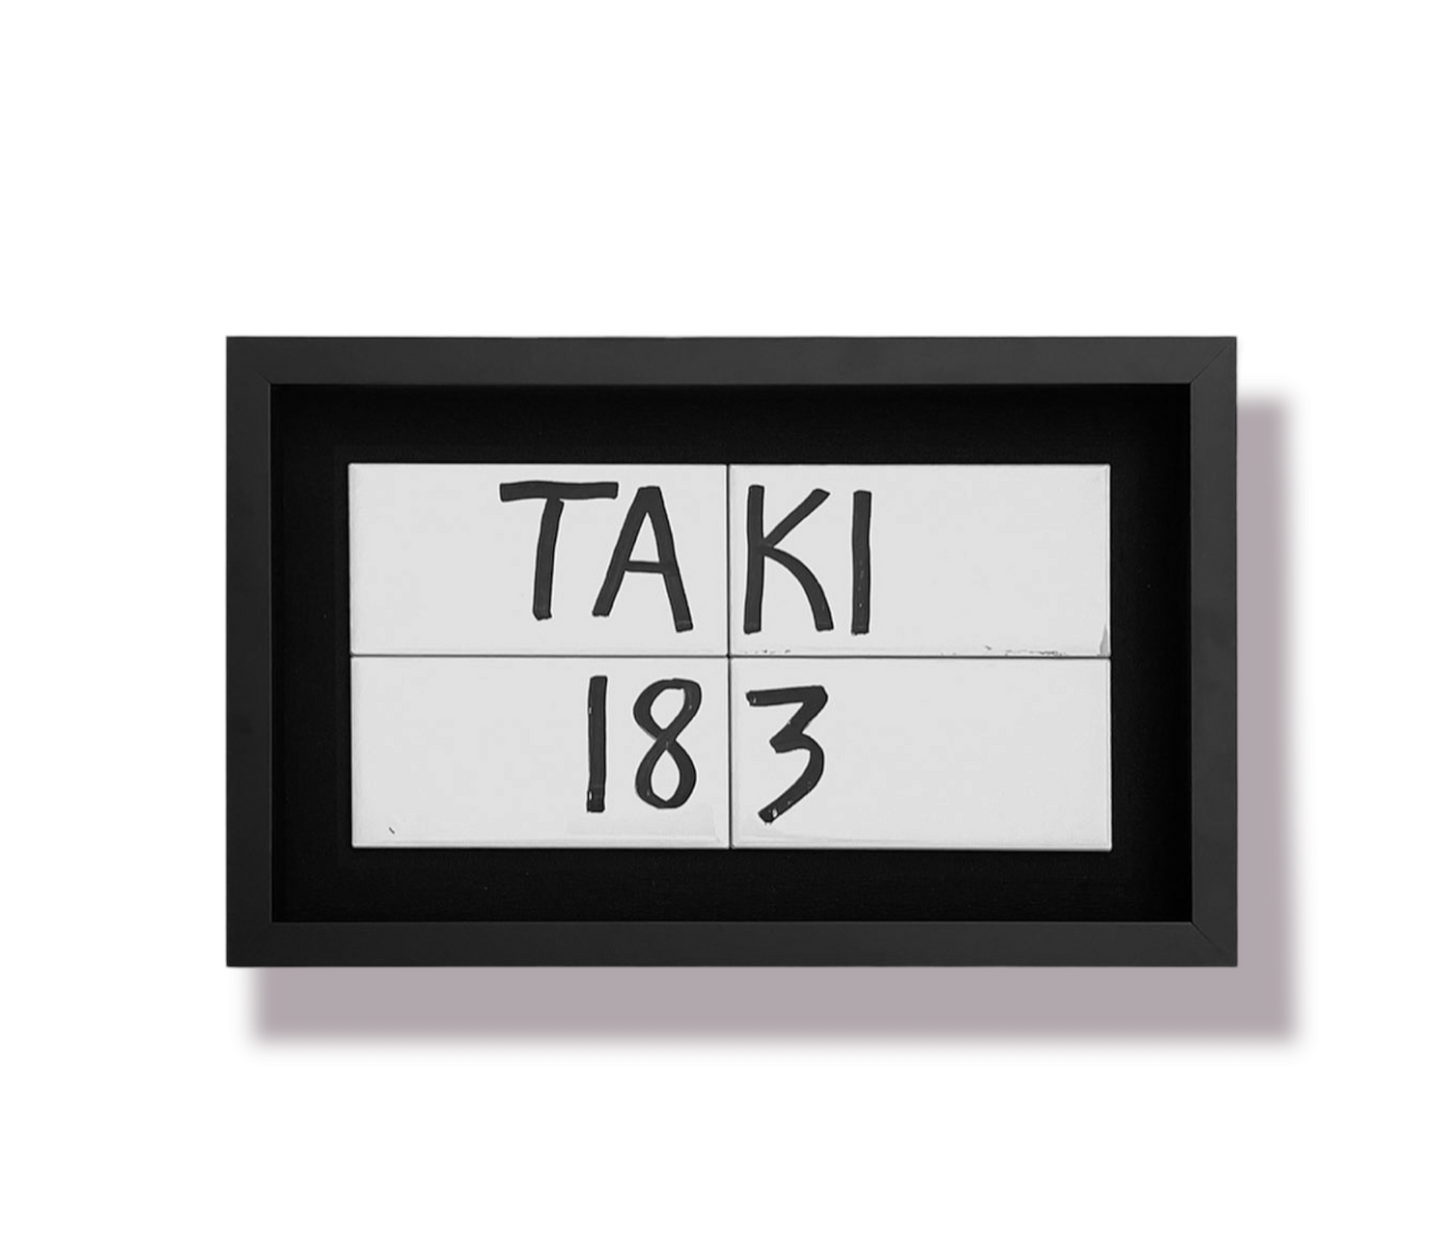 TAKI 183 Subway tiles